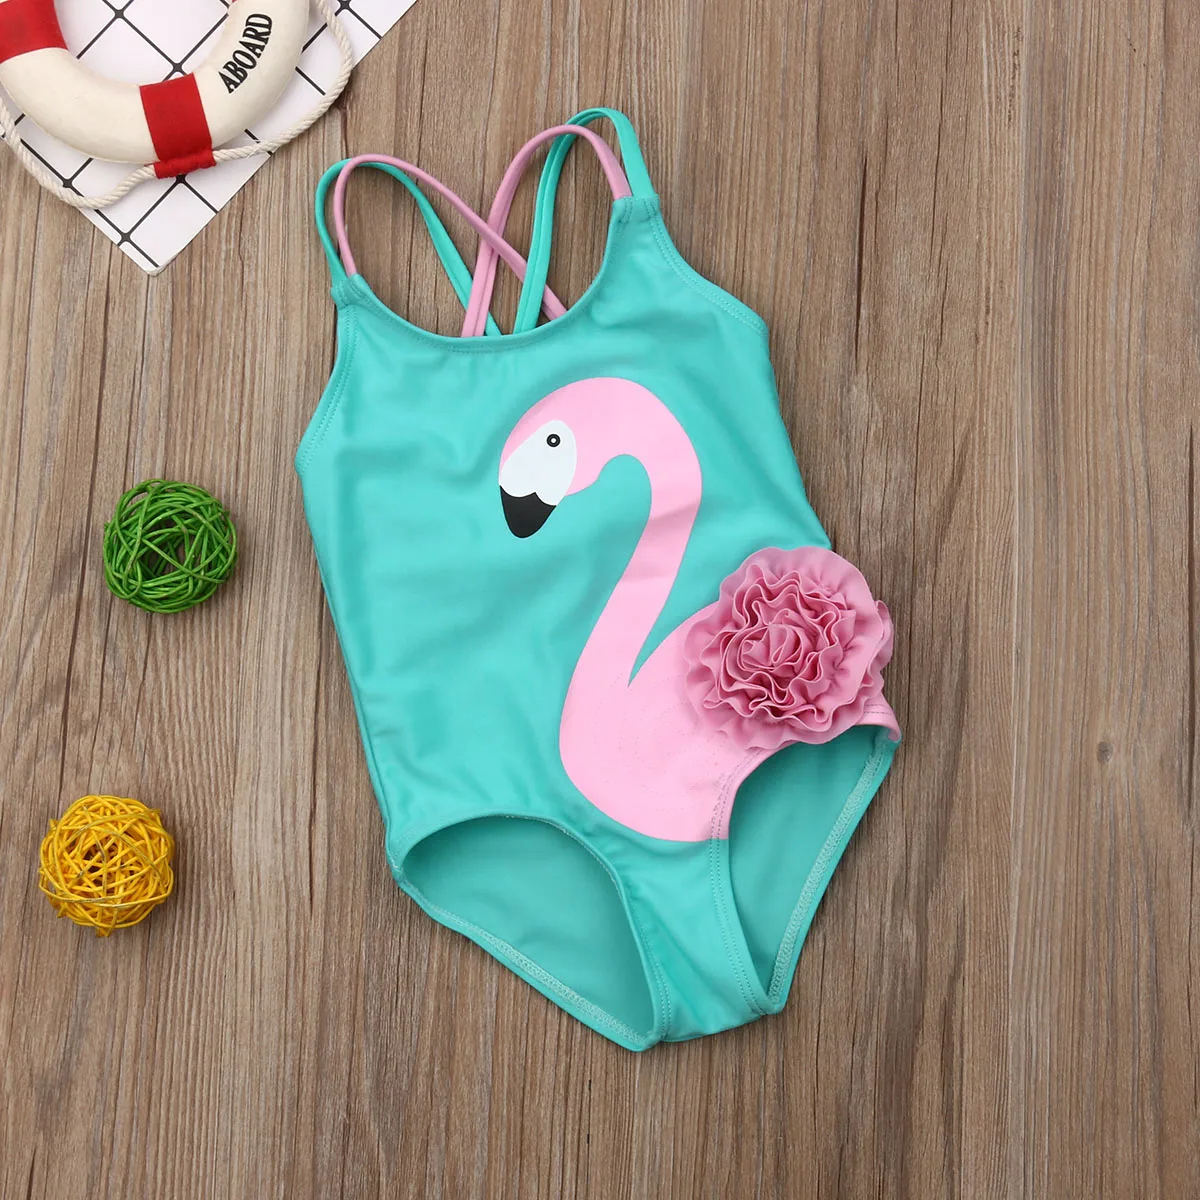 Одежда для купания для девочек, купальник-бикини с фламинго для маленьких девочек, купальный костюм, пляжная одежда, купальный костюм